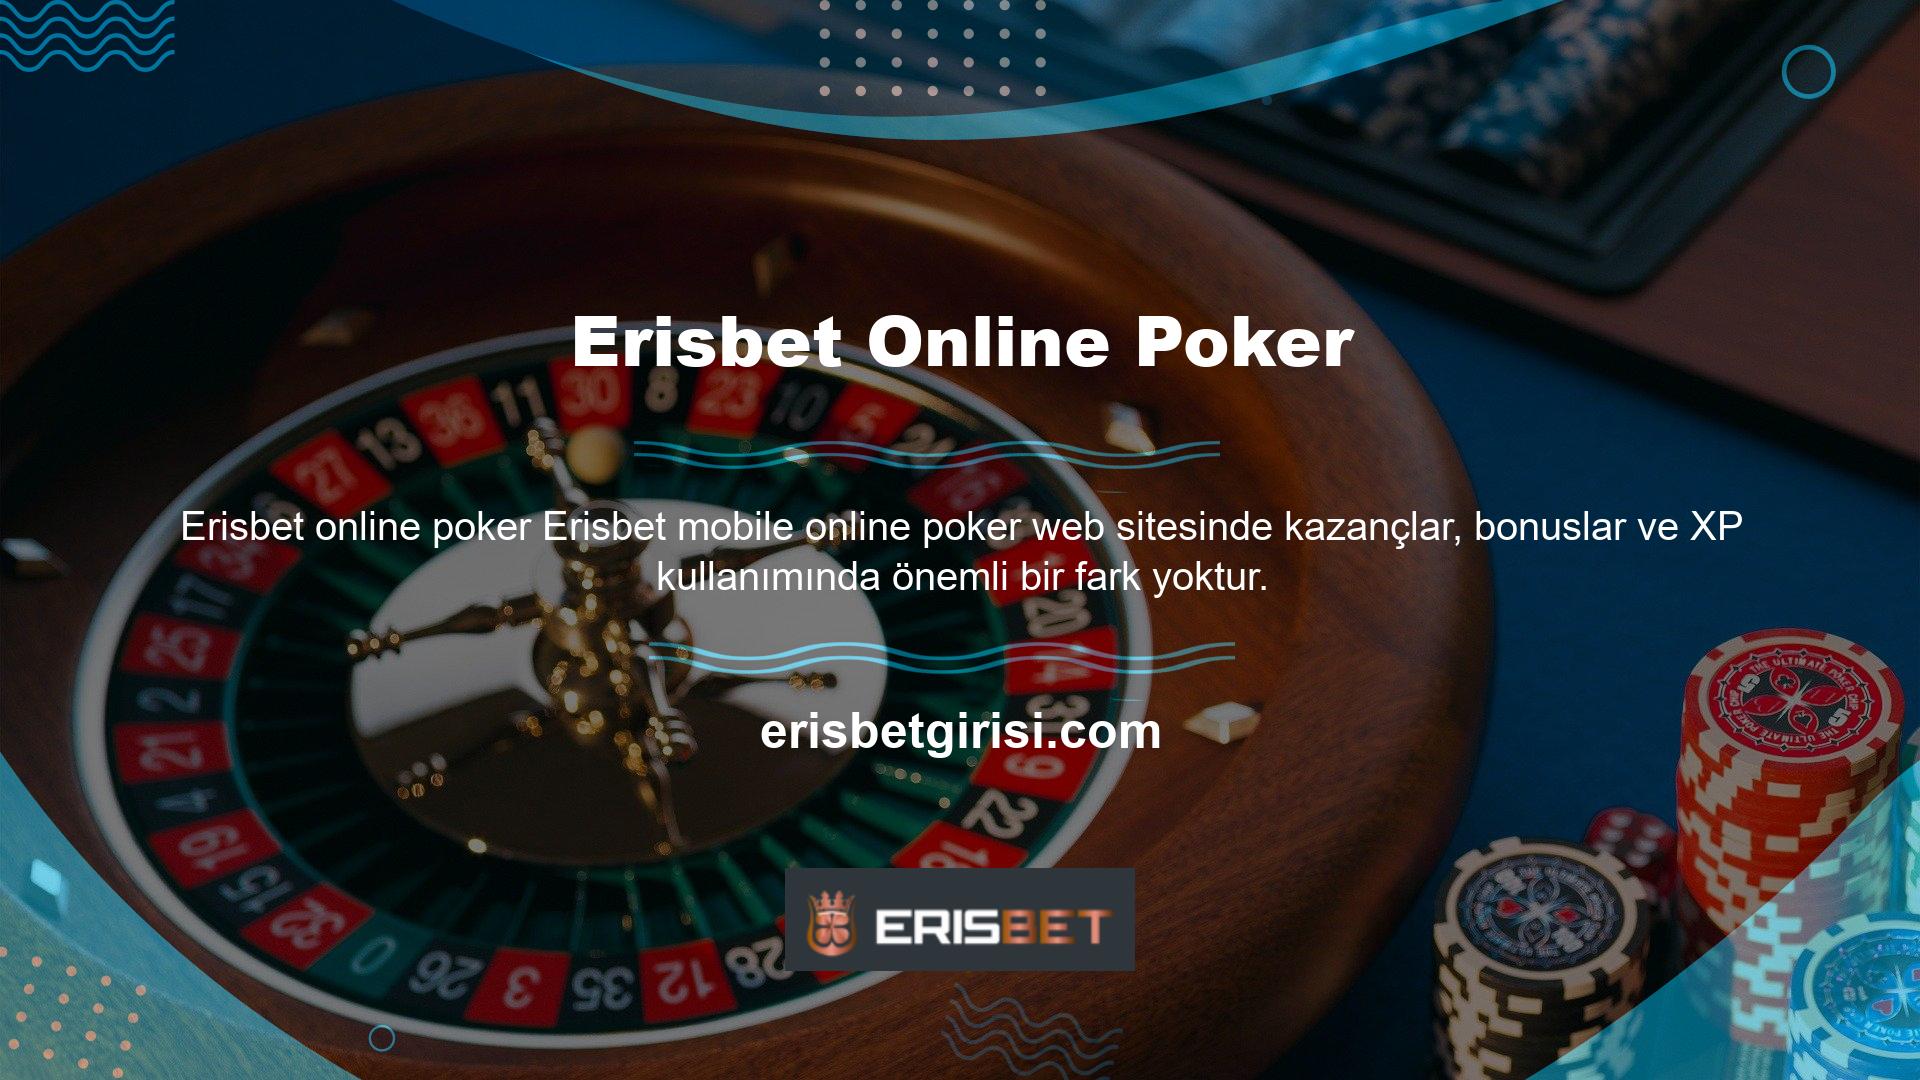 Sitede ayrıca çeşitli canlı bahis seçenekleri, en popüler casino oyunları ve canlı casino oyunları da sunulmaktadır